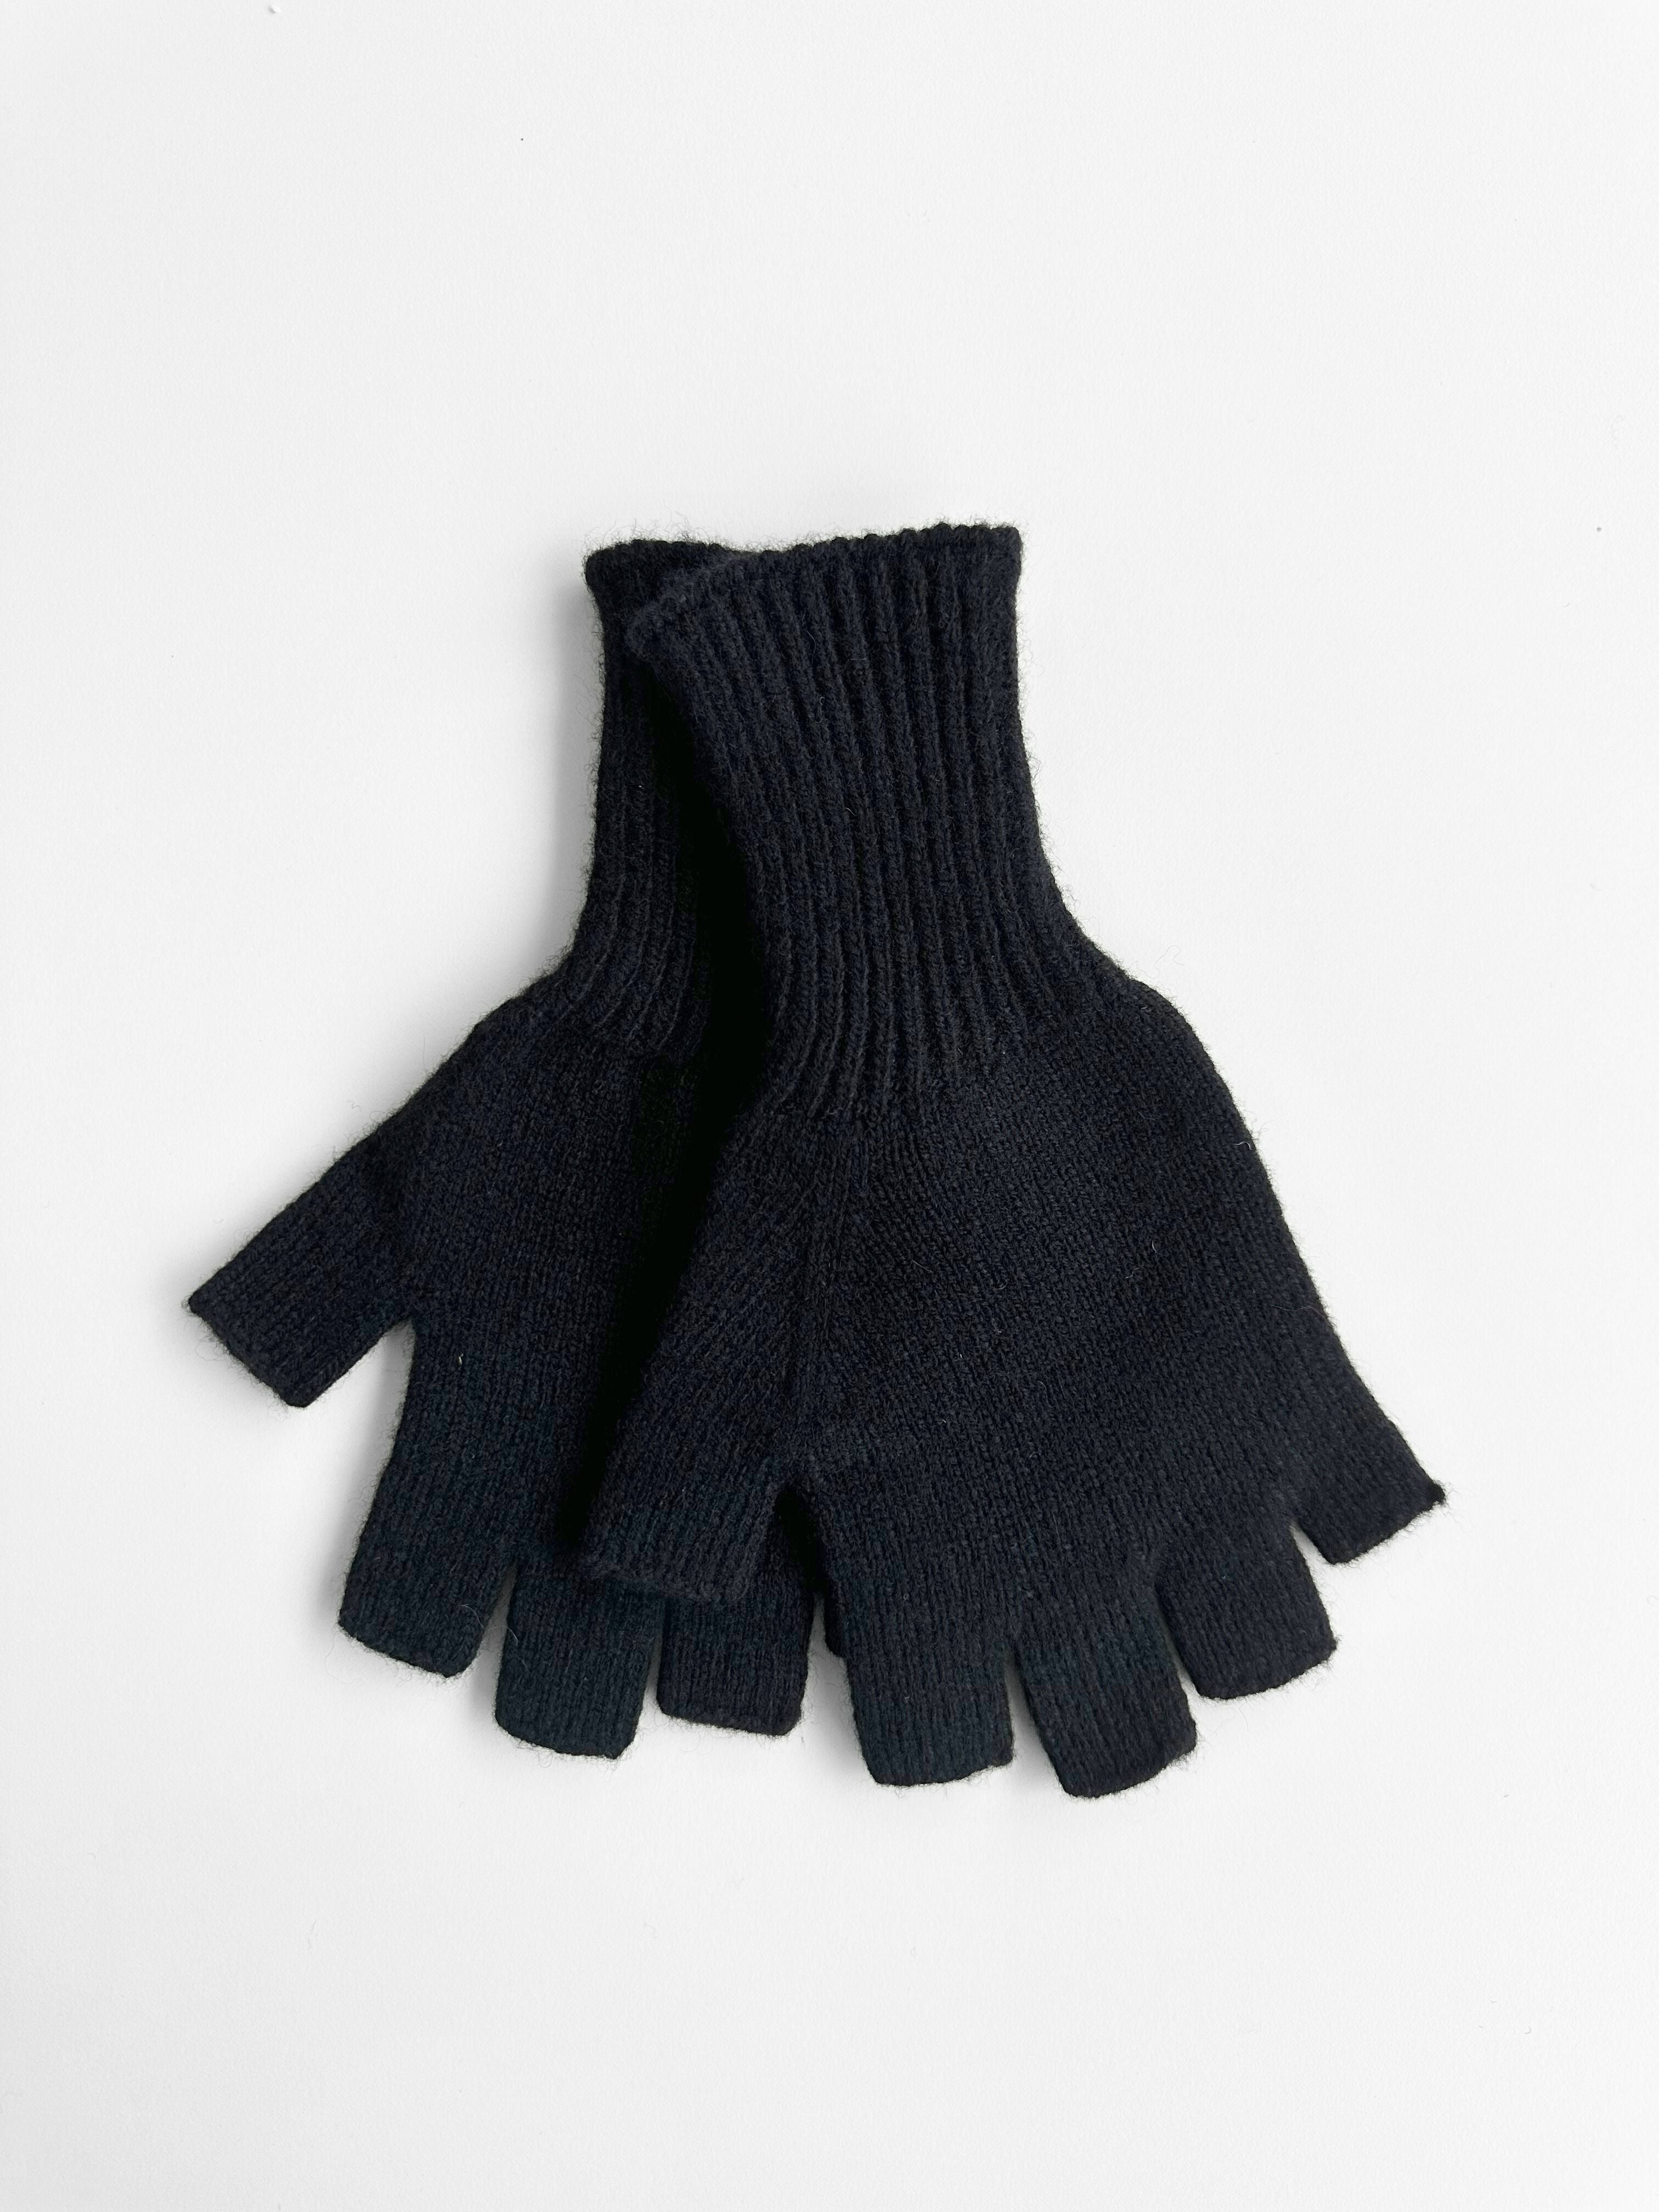 Merino Wool Fingerless Gloves - Black